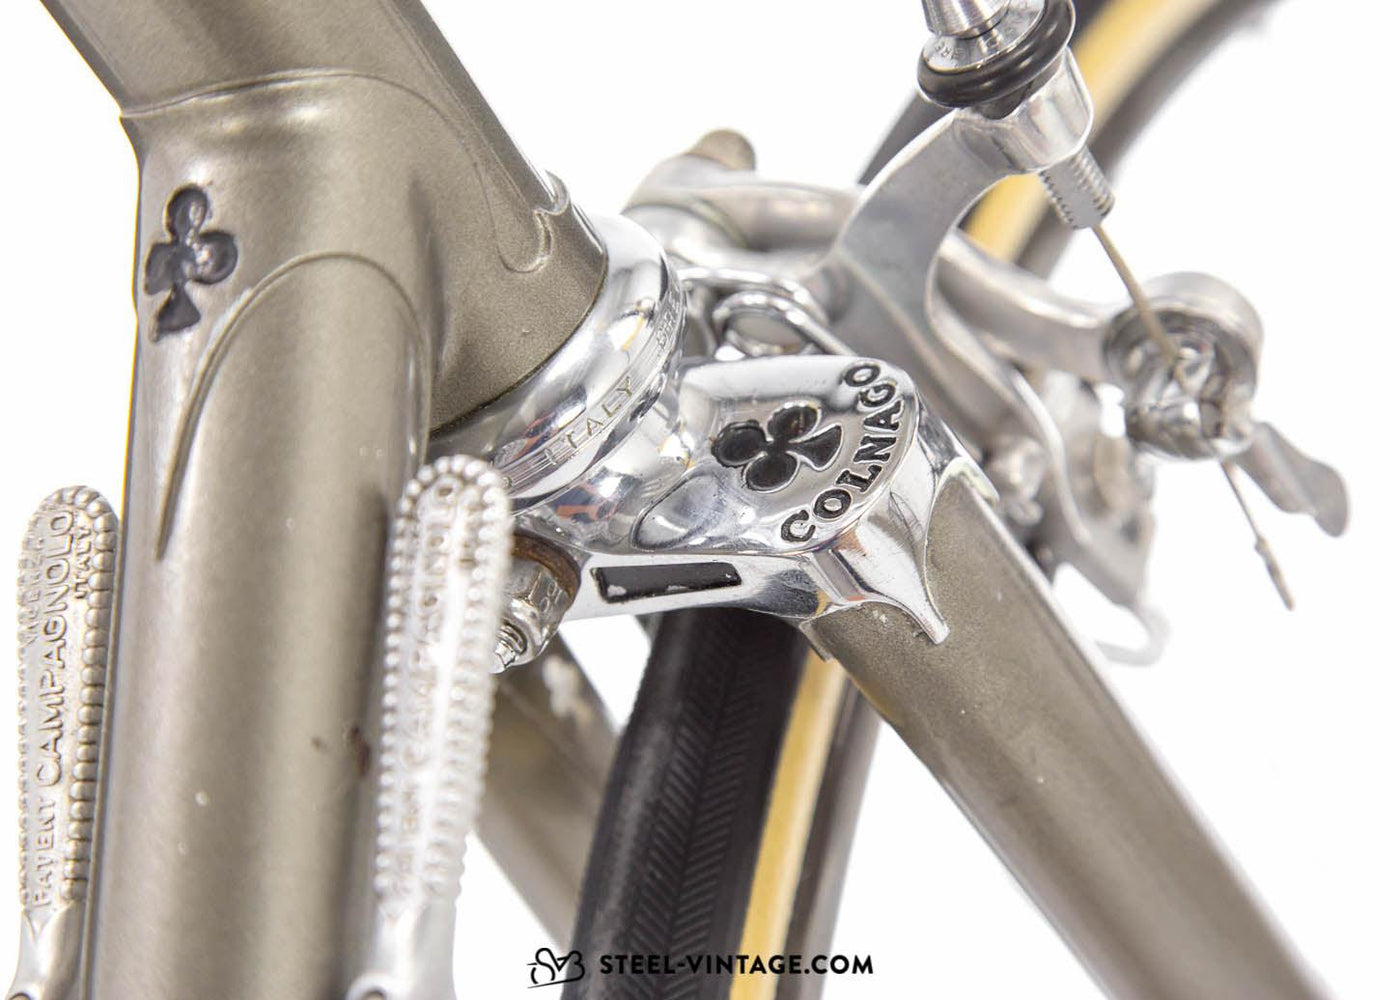 Colnago Super 1976 Vintage Racing Bicycle - Steel Vintage Bikes